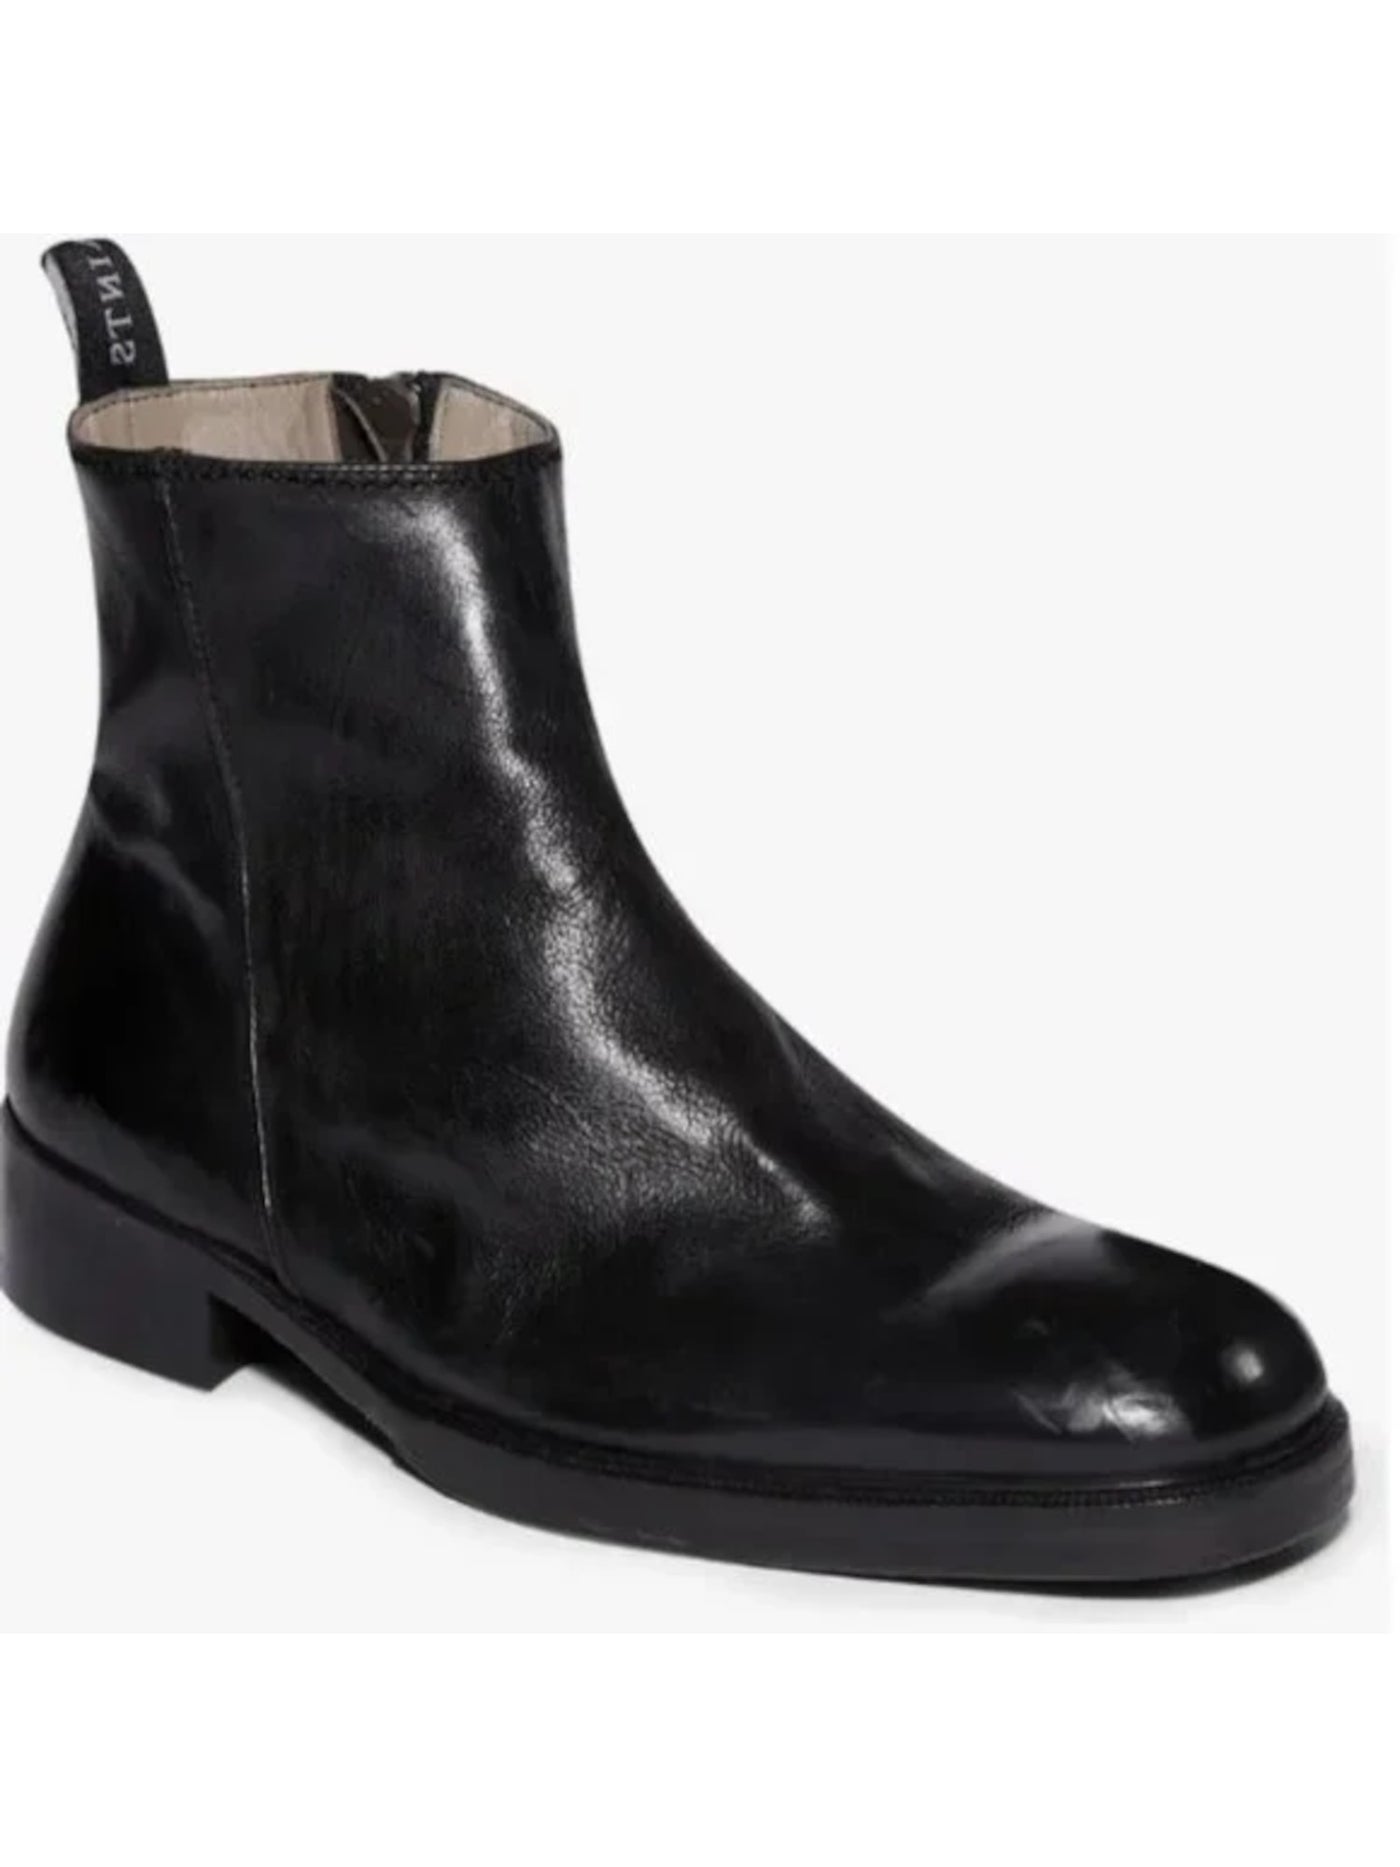 ALLSAINTS Mens Black Seth Square Toe Block Heel Zip-Up Boots Shoes 43